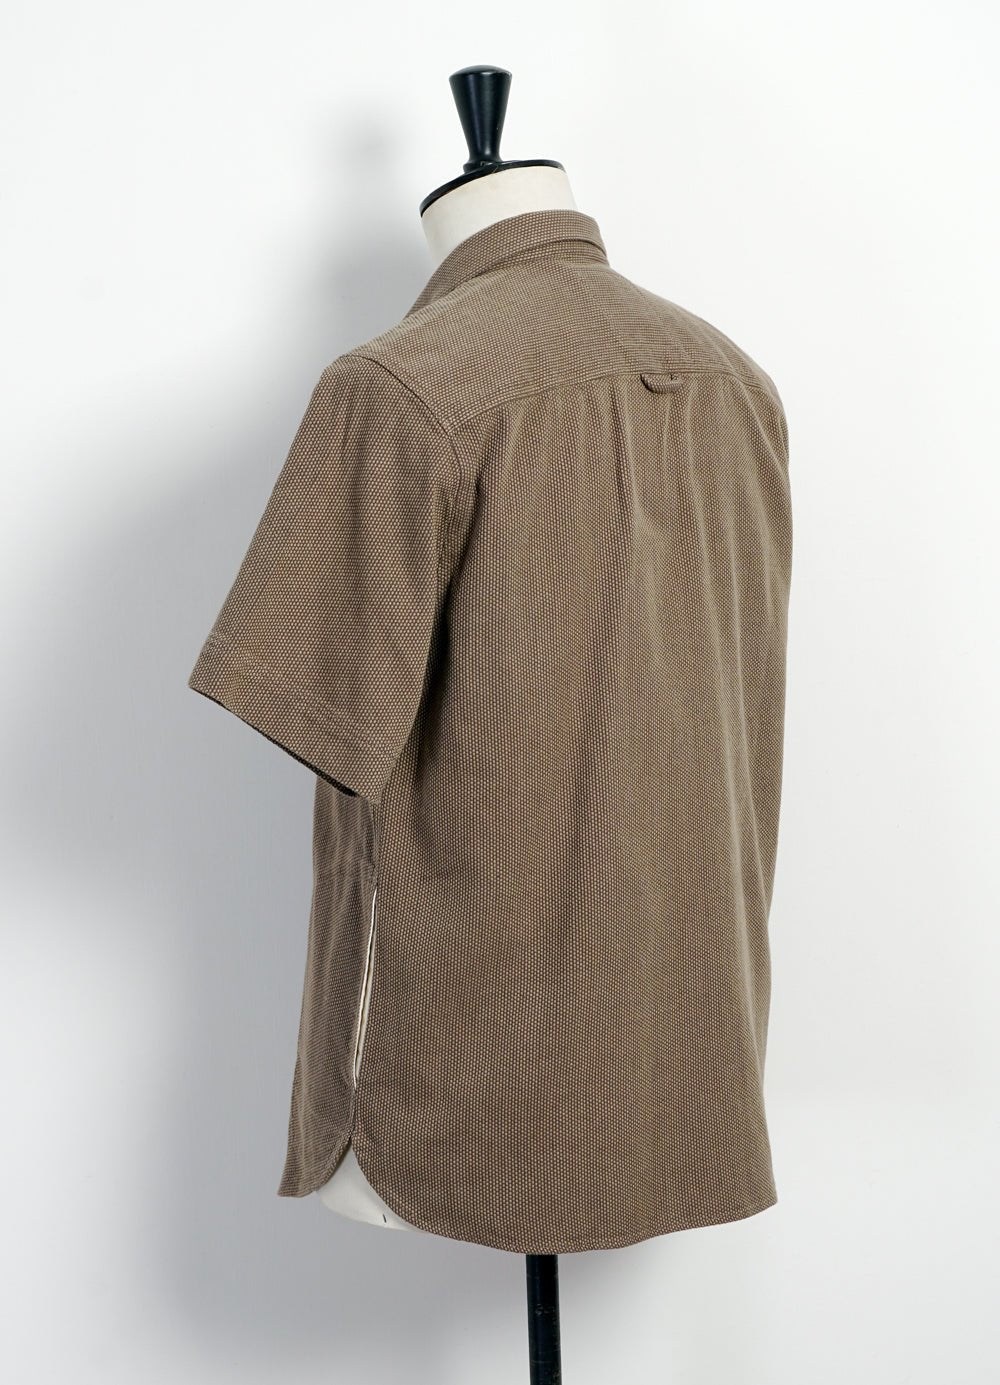 HANSEN GARMENTS - VILLY | Short Sleeve Shirt | Khaki Sashiko - HANSEN Garments